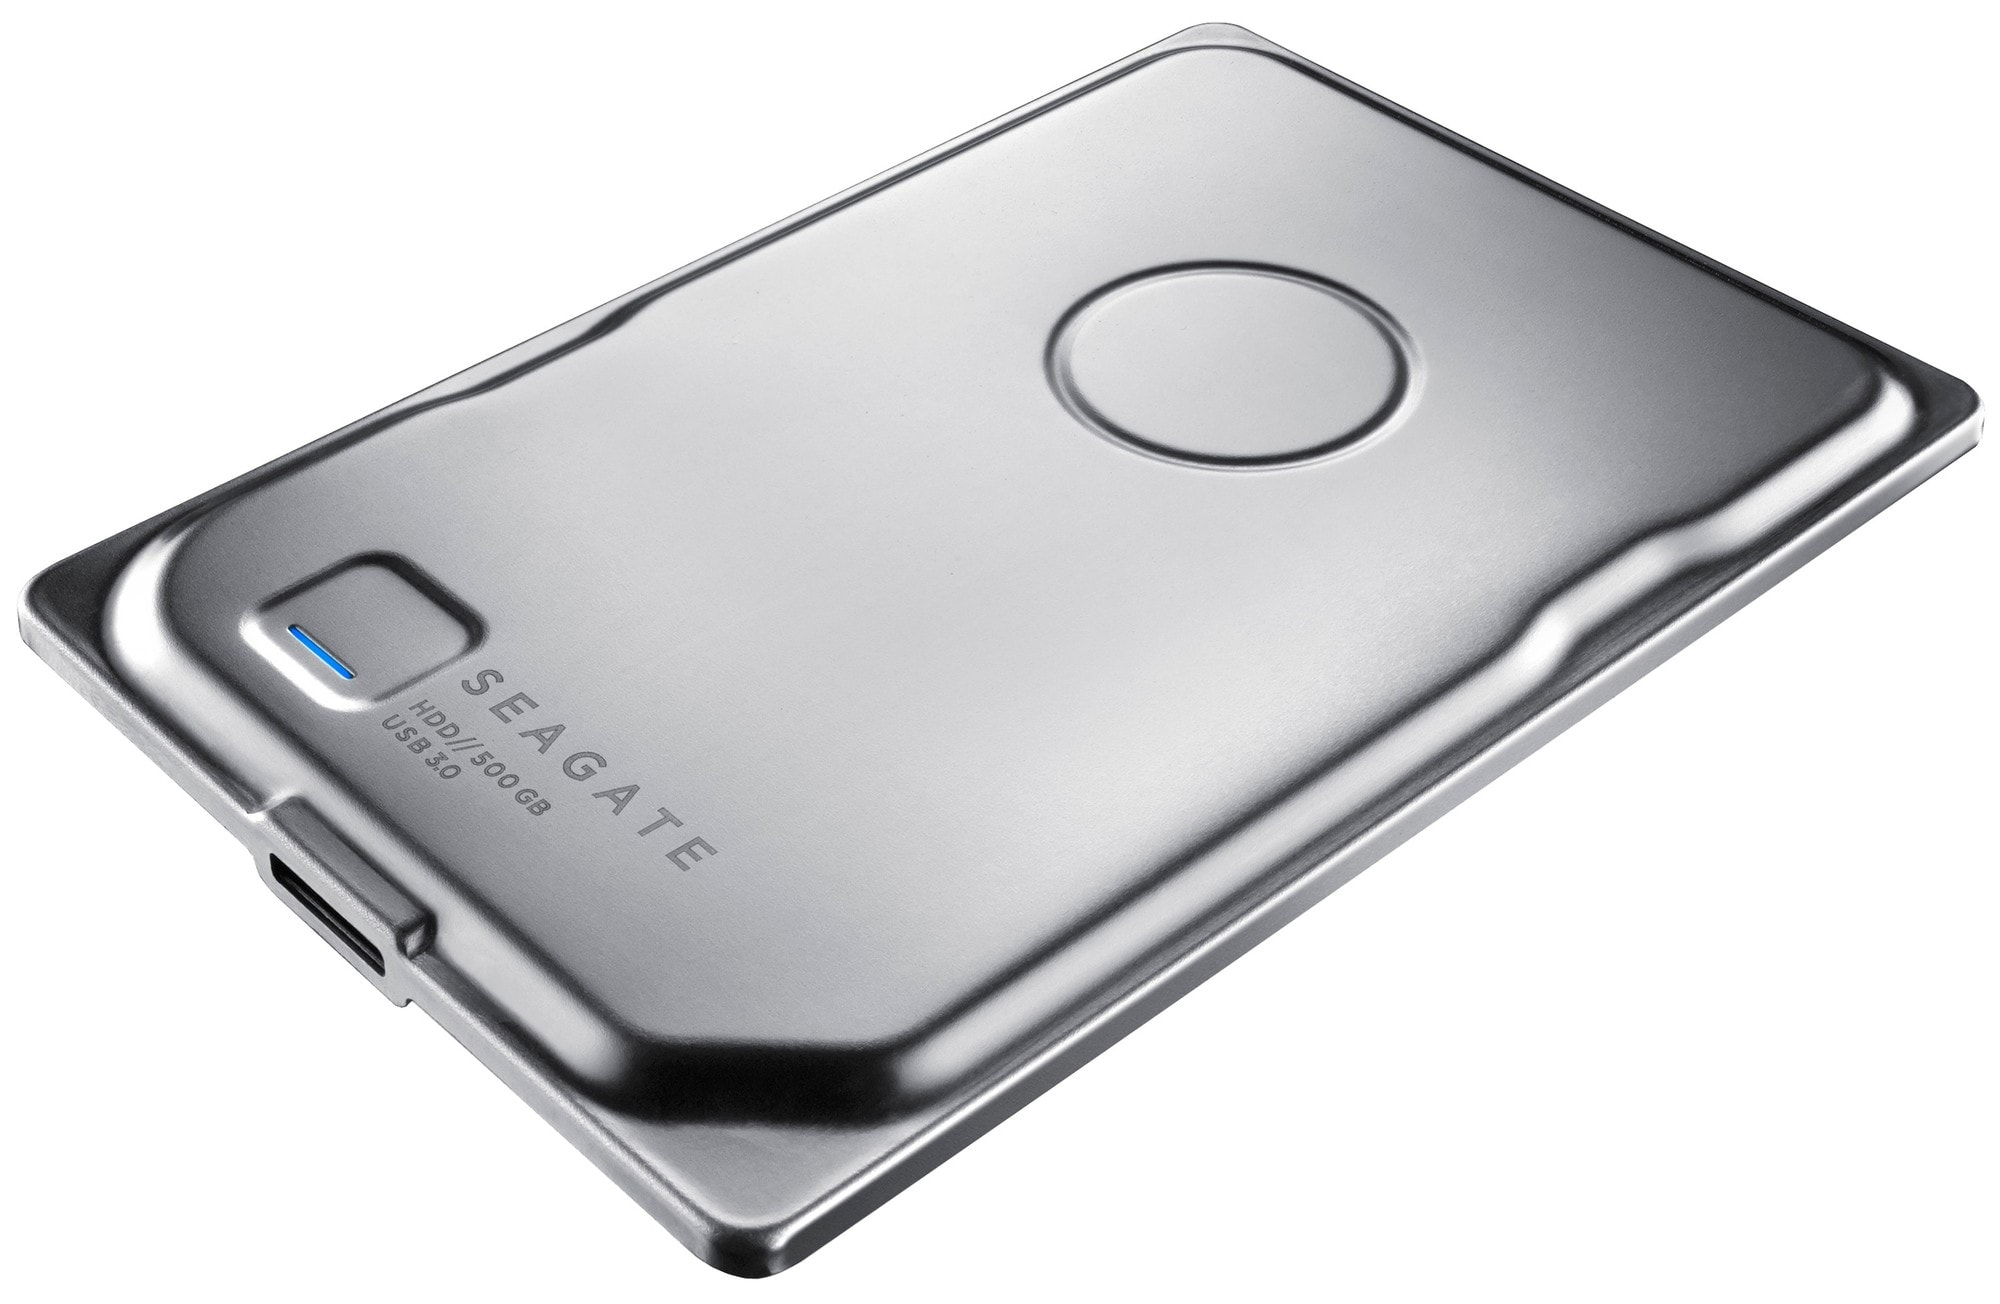 Seagate Seven 500 GB bærbar harddisk - stål | Elgiganten